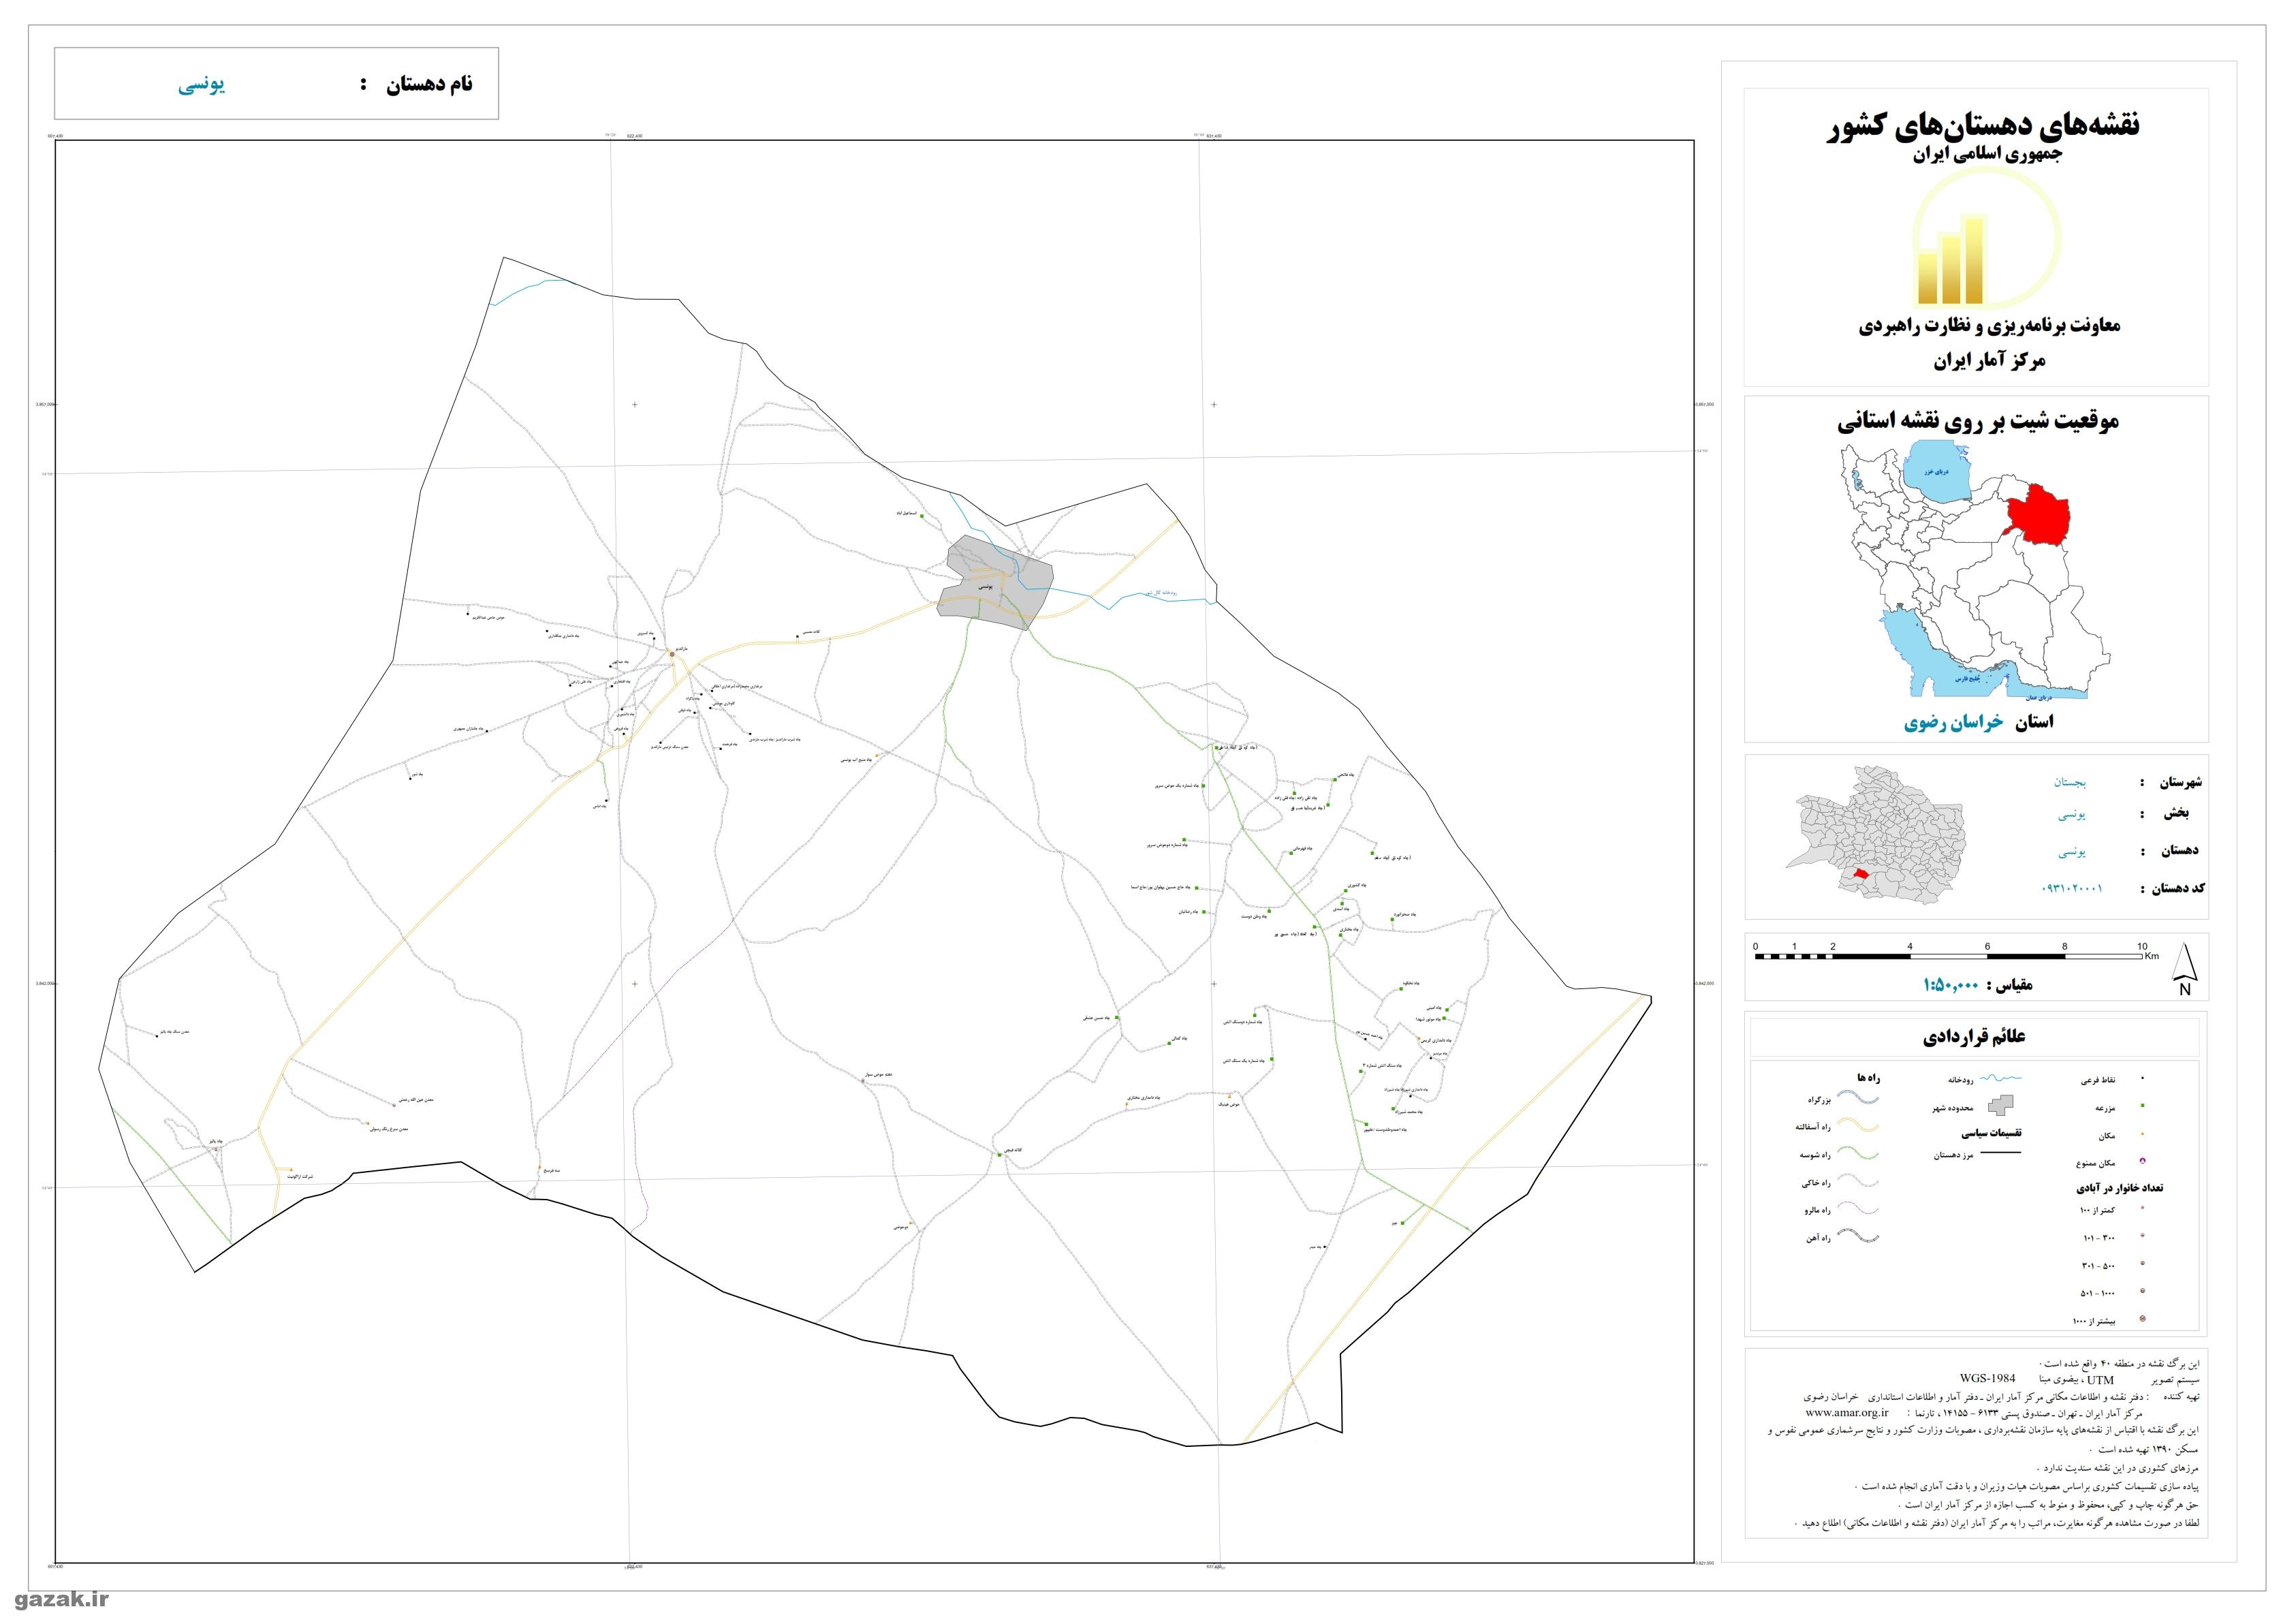 نقشه روستاهای شهرستان بجستان